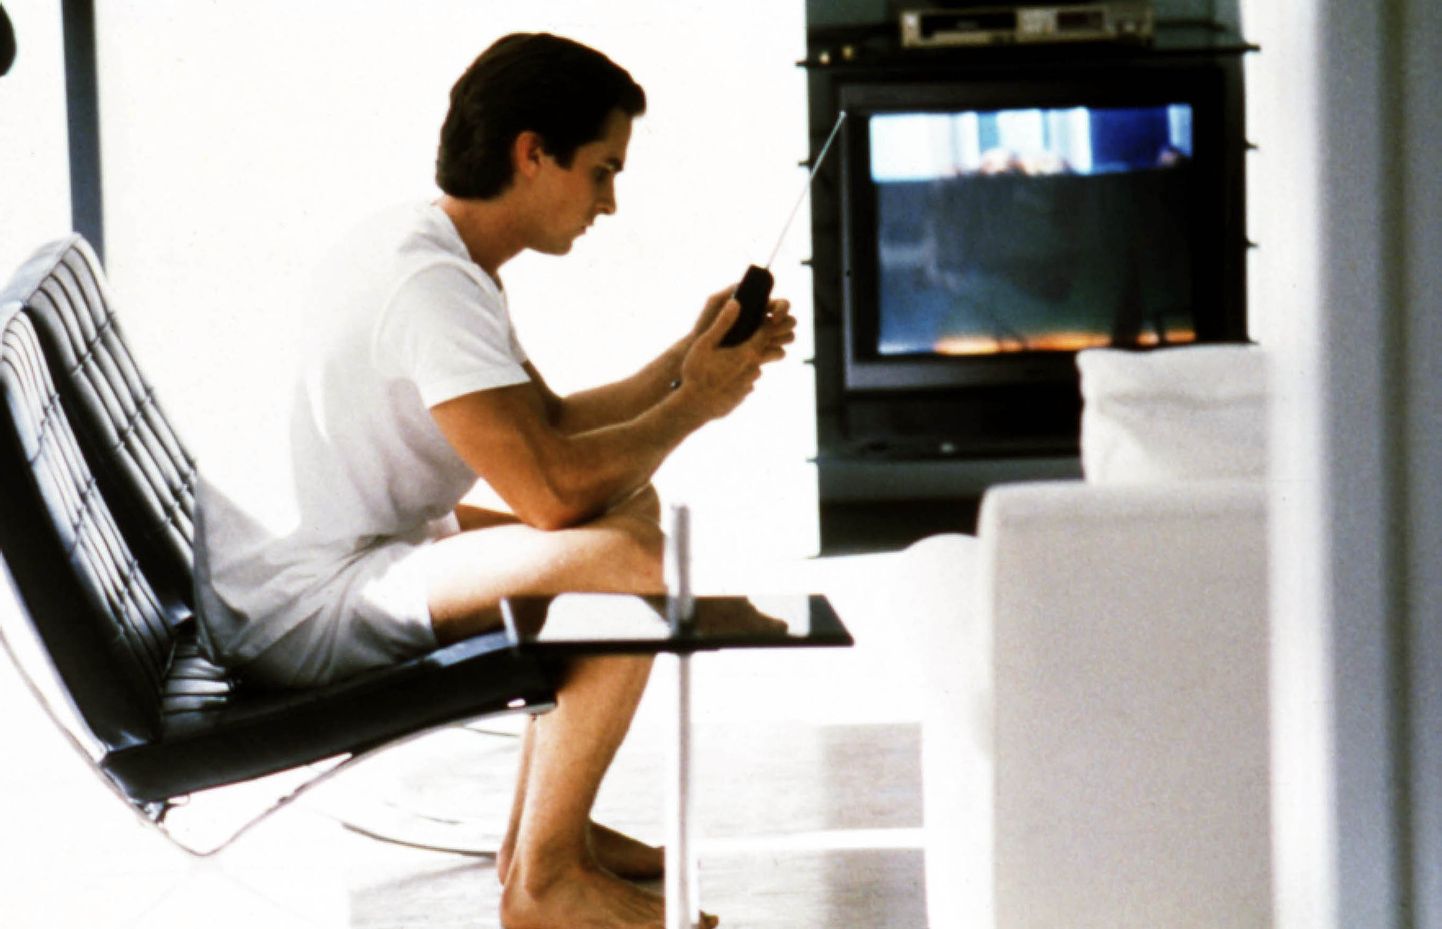 Christian Bale'i mängitud Patrick Bateman filmis "Ameerika psühho" (2000) esindas täpselt sellist tegelast, nagu neist uuringutest välja tuli. Peen linnas elav mees, kes loodust ei armastanud. Õnneks pole aga psühhopaatilised jooned enamasti nii ohtlikud, nagu olid sel filmikarakteril ja suuremal osal inimestel on teatud psühhopaatilised jooned olemas.